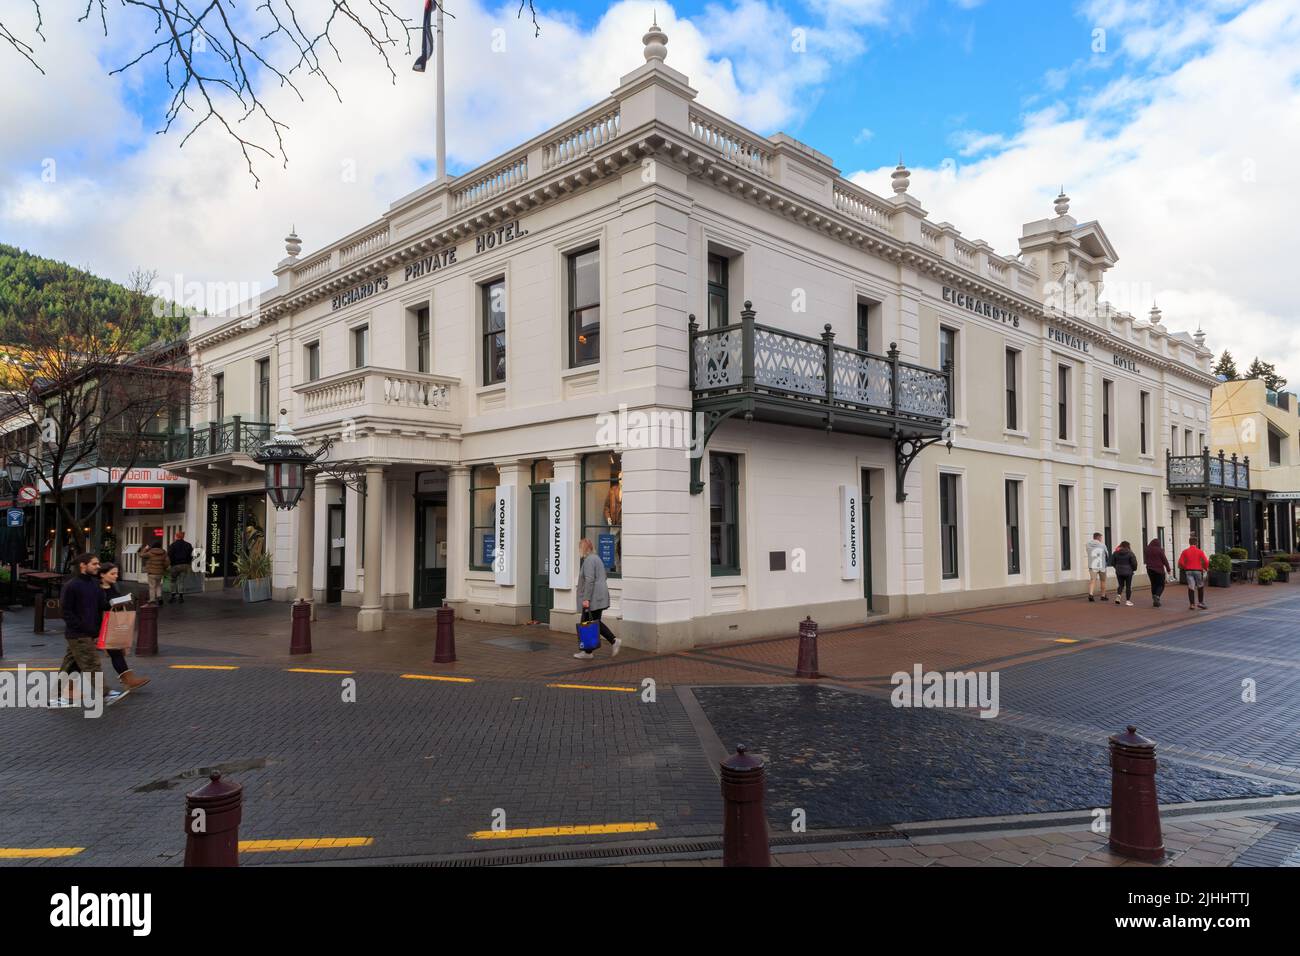 Eichhardt's Private Hotel à Queenstown, en Nouvelle-Zélande, un bâtiment historique proposant un hébergement de caractère Banque D'Images